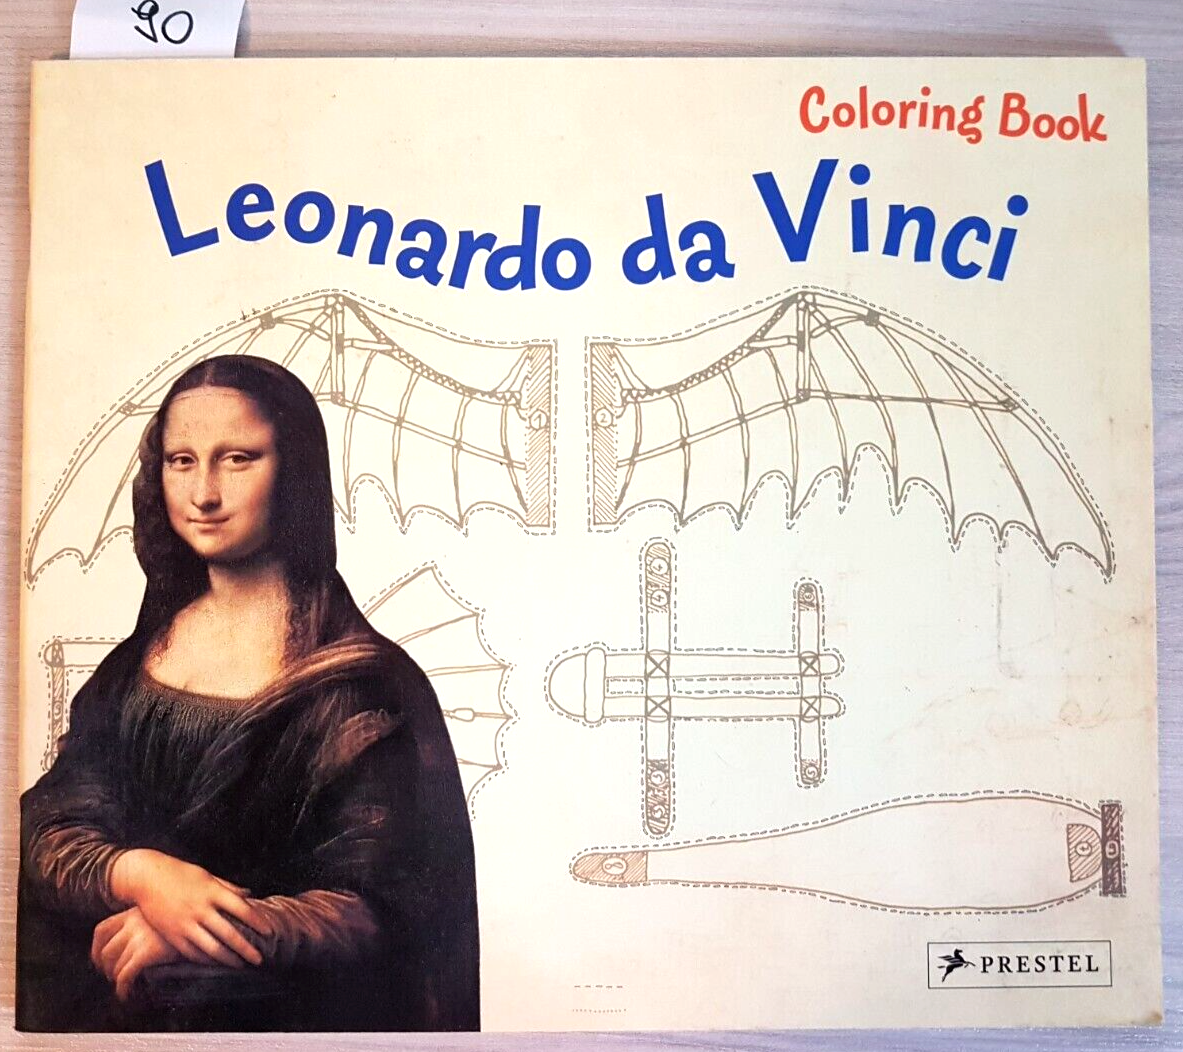 LEONARDO DA VINCI - COLORING BOOK PRESTEL divertiti a colorare come Leonardo